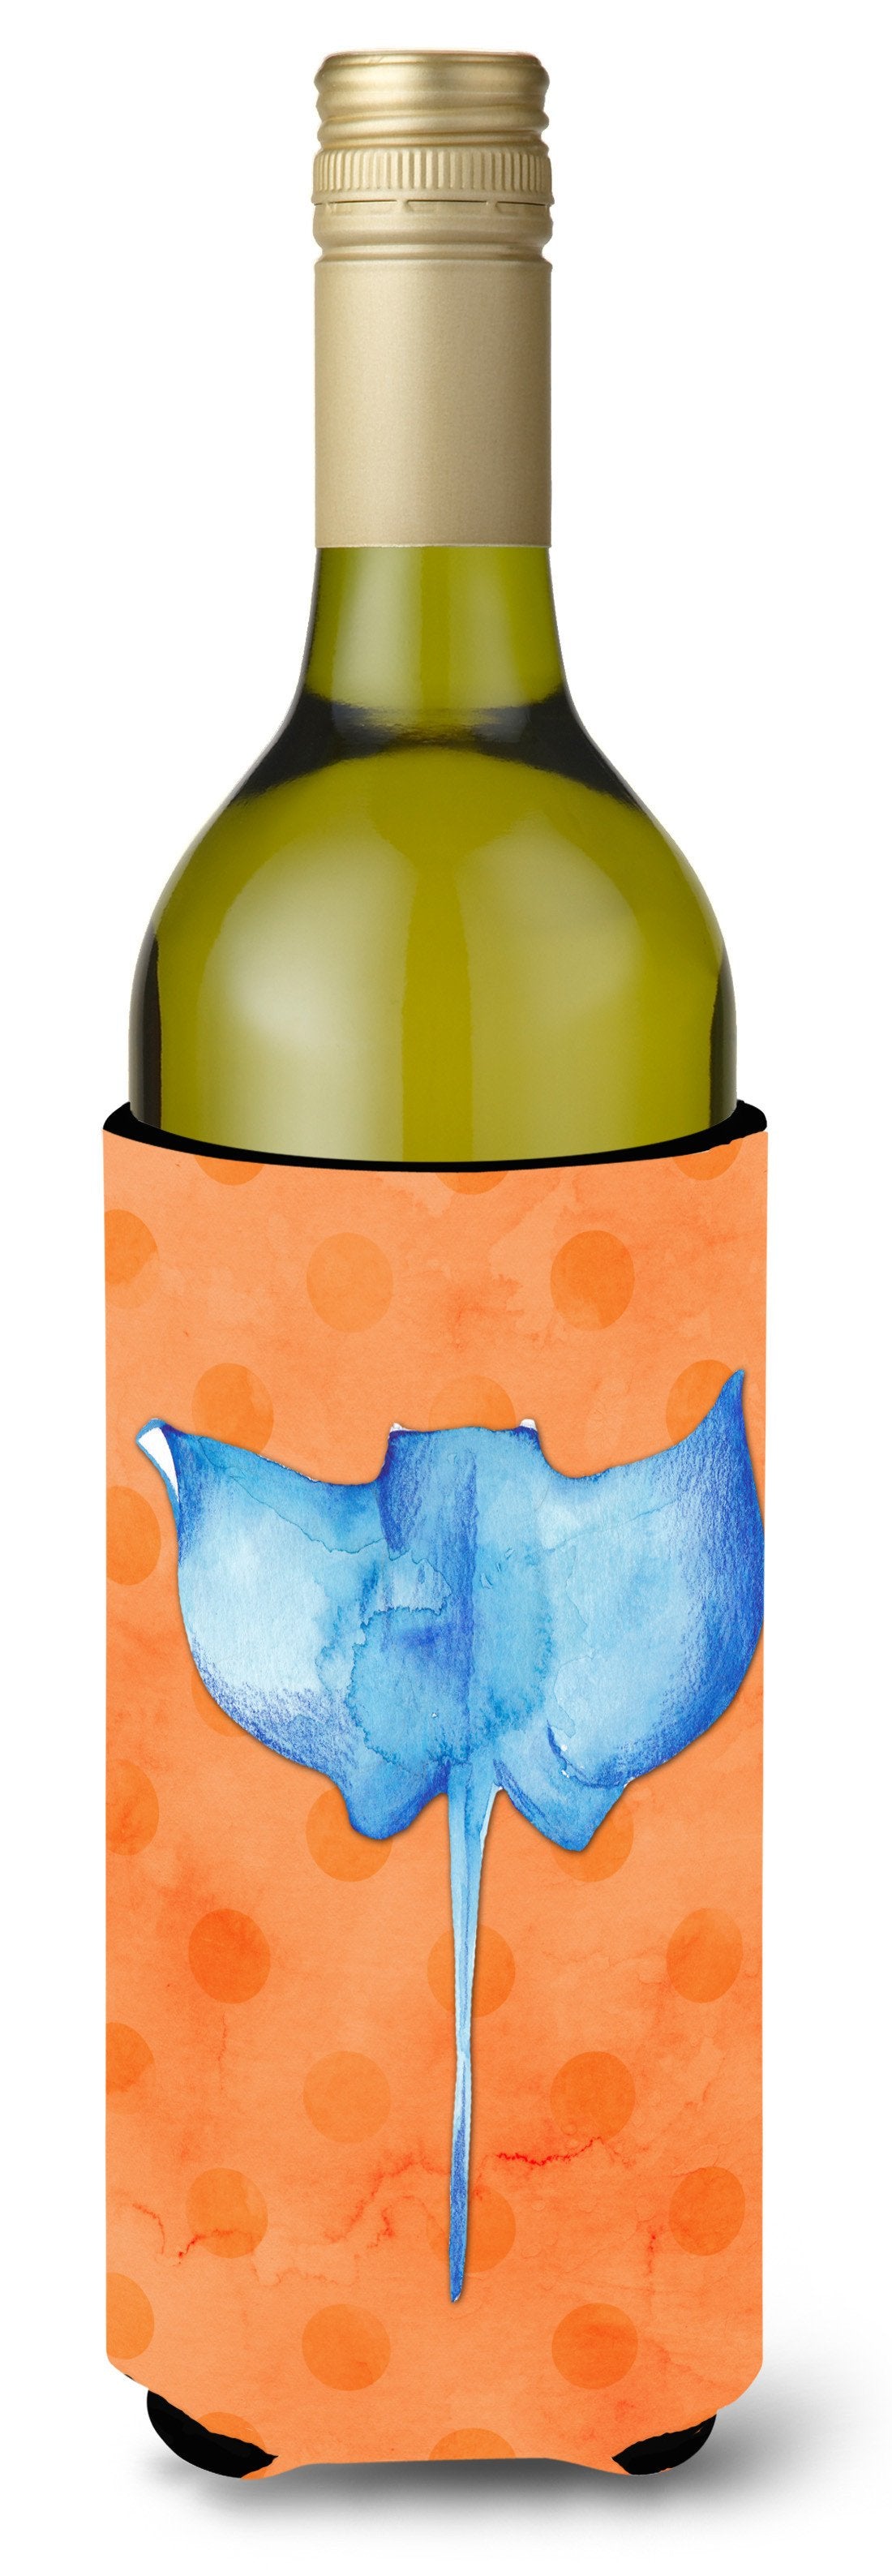 Sting Ray Orange Polkadot Wine Bottle Beverge Insulator Hugger BB8238LITERK by Caroline's Treasures